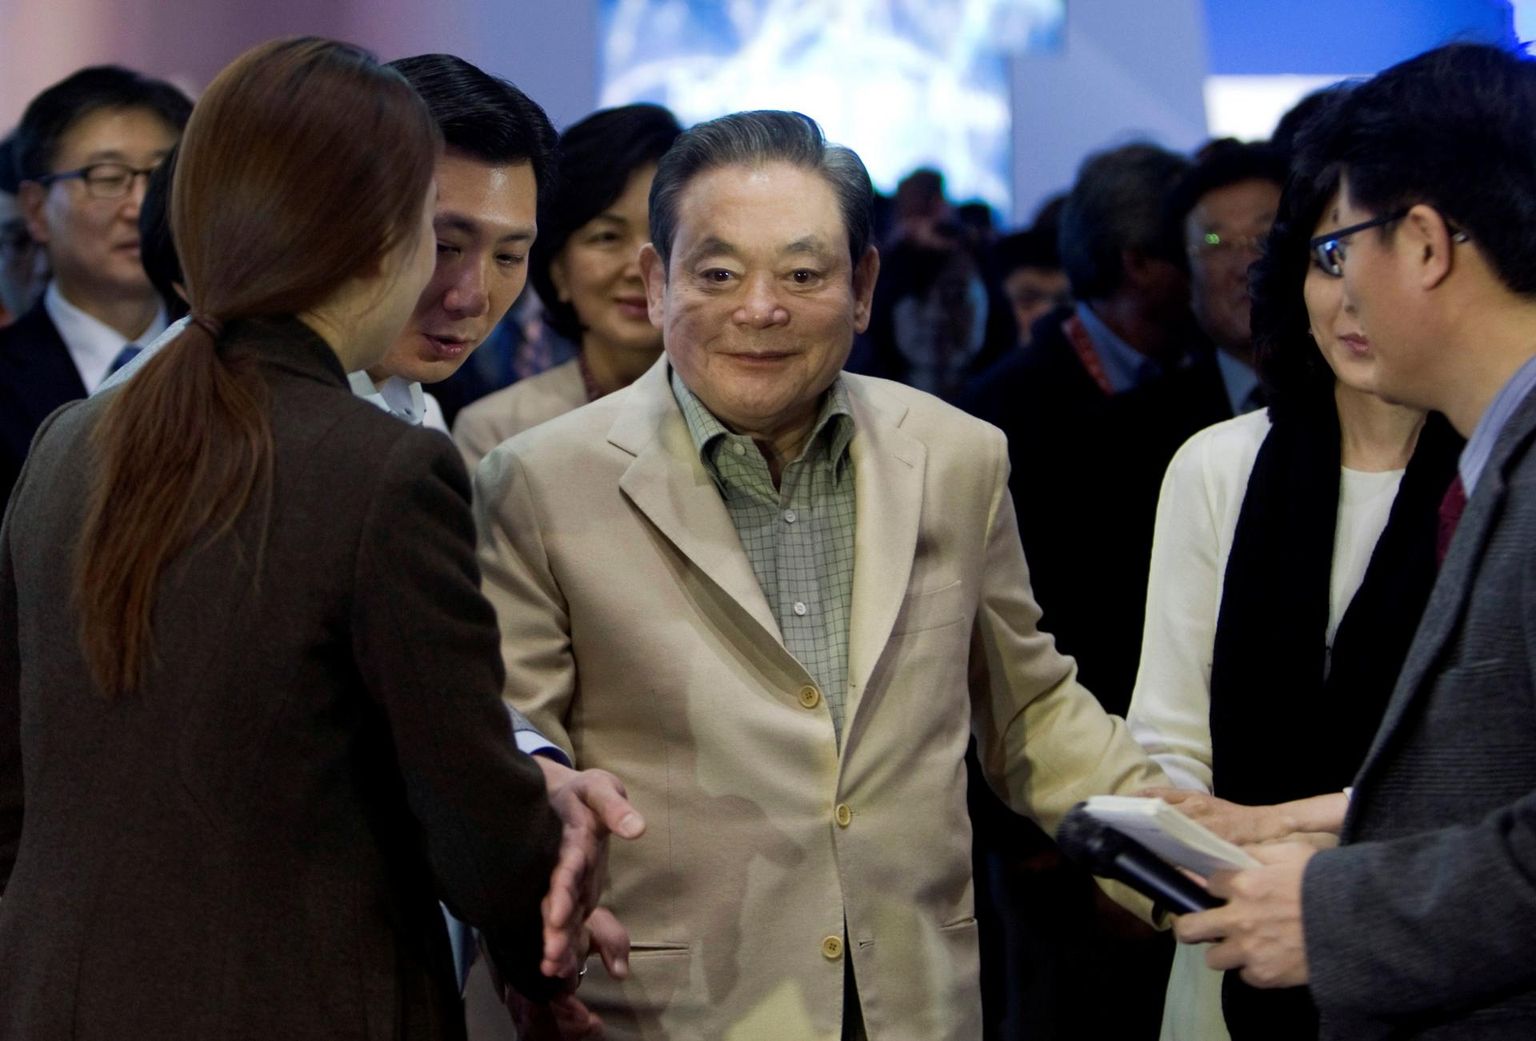 Samsungi möödunud aastal surnud tegevjuht Lee Kun-hee oli surres Lõuna-Korea rikkaim inimene. 